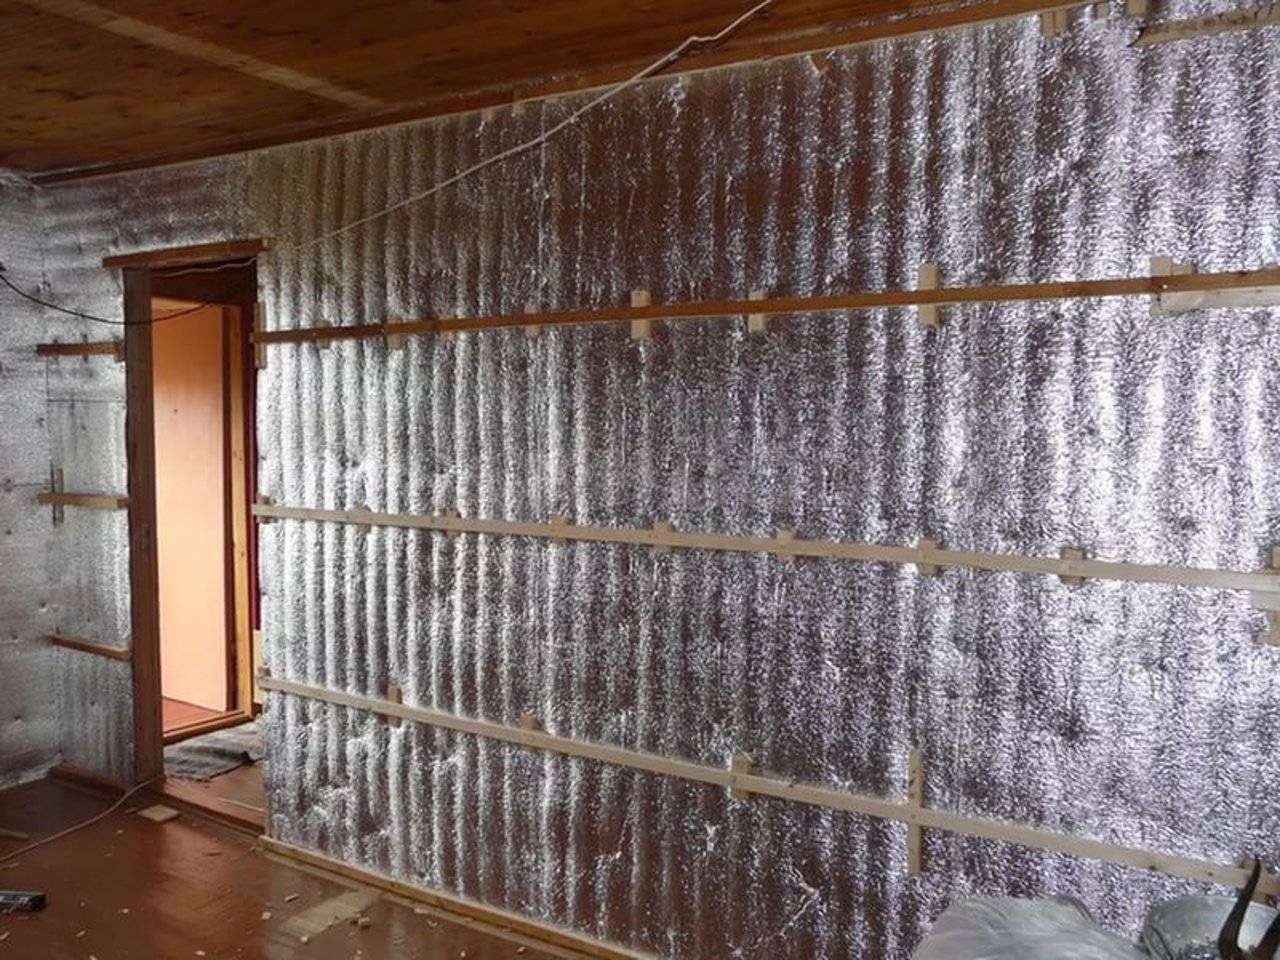 Фольгированный утеплитель: для стен с фольгой, теплоизоляция, какой стороной укладывать